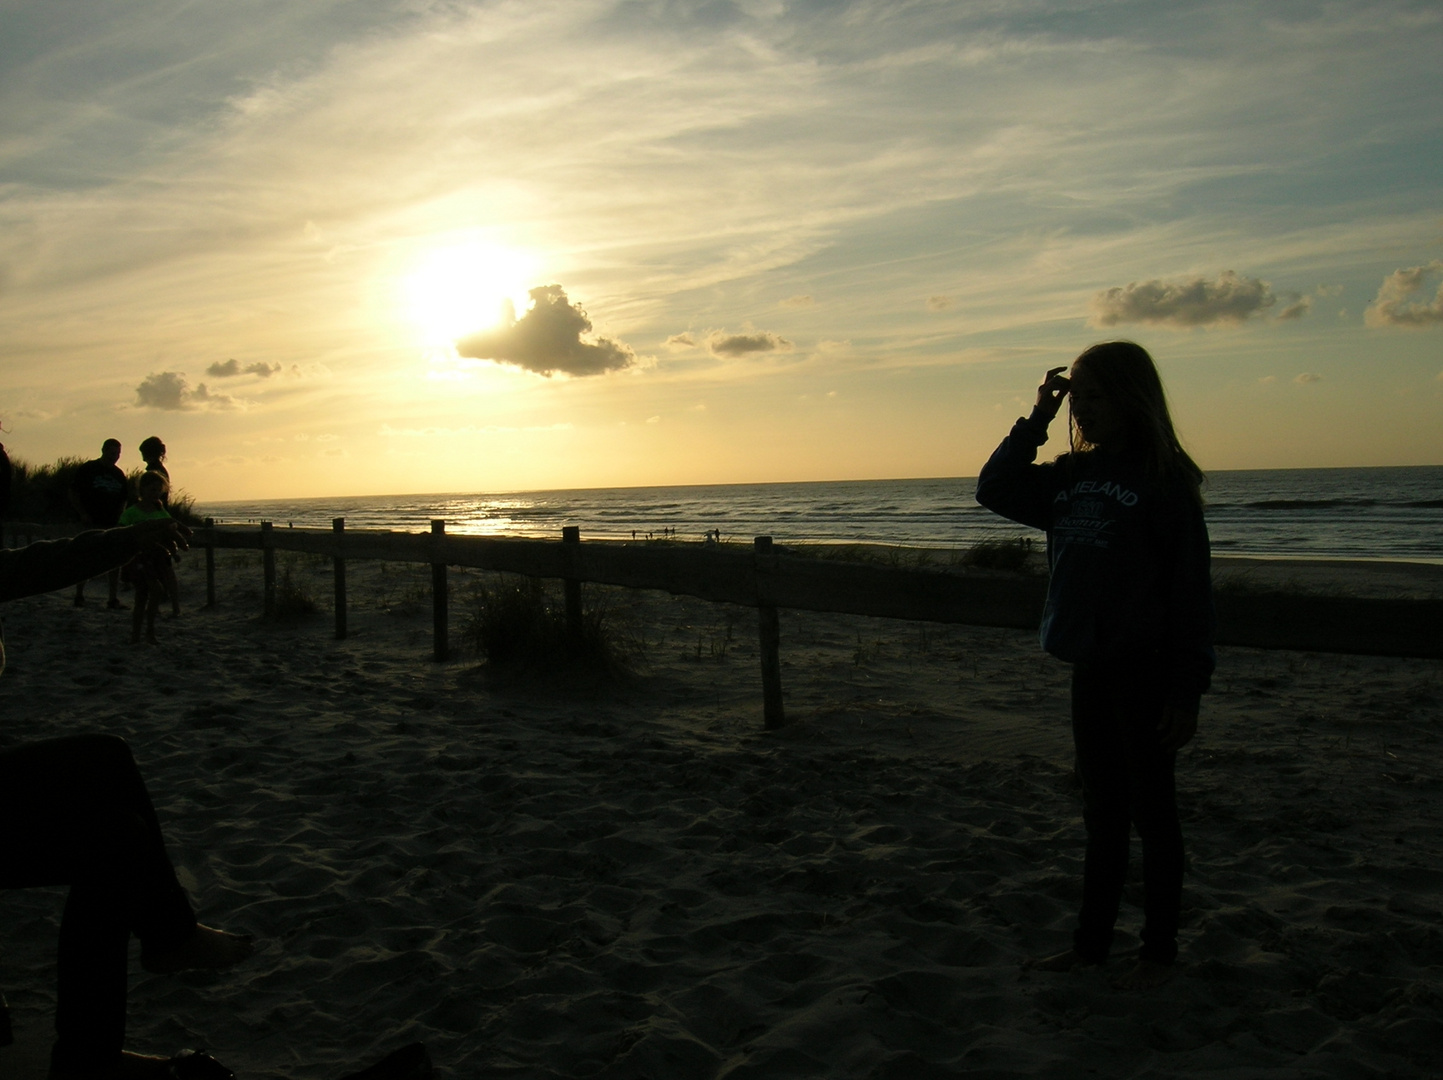 Sonnenuntergang am Strand von Nes/Ameland, Niederlande